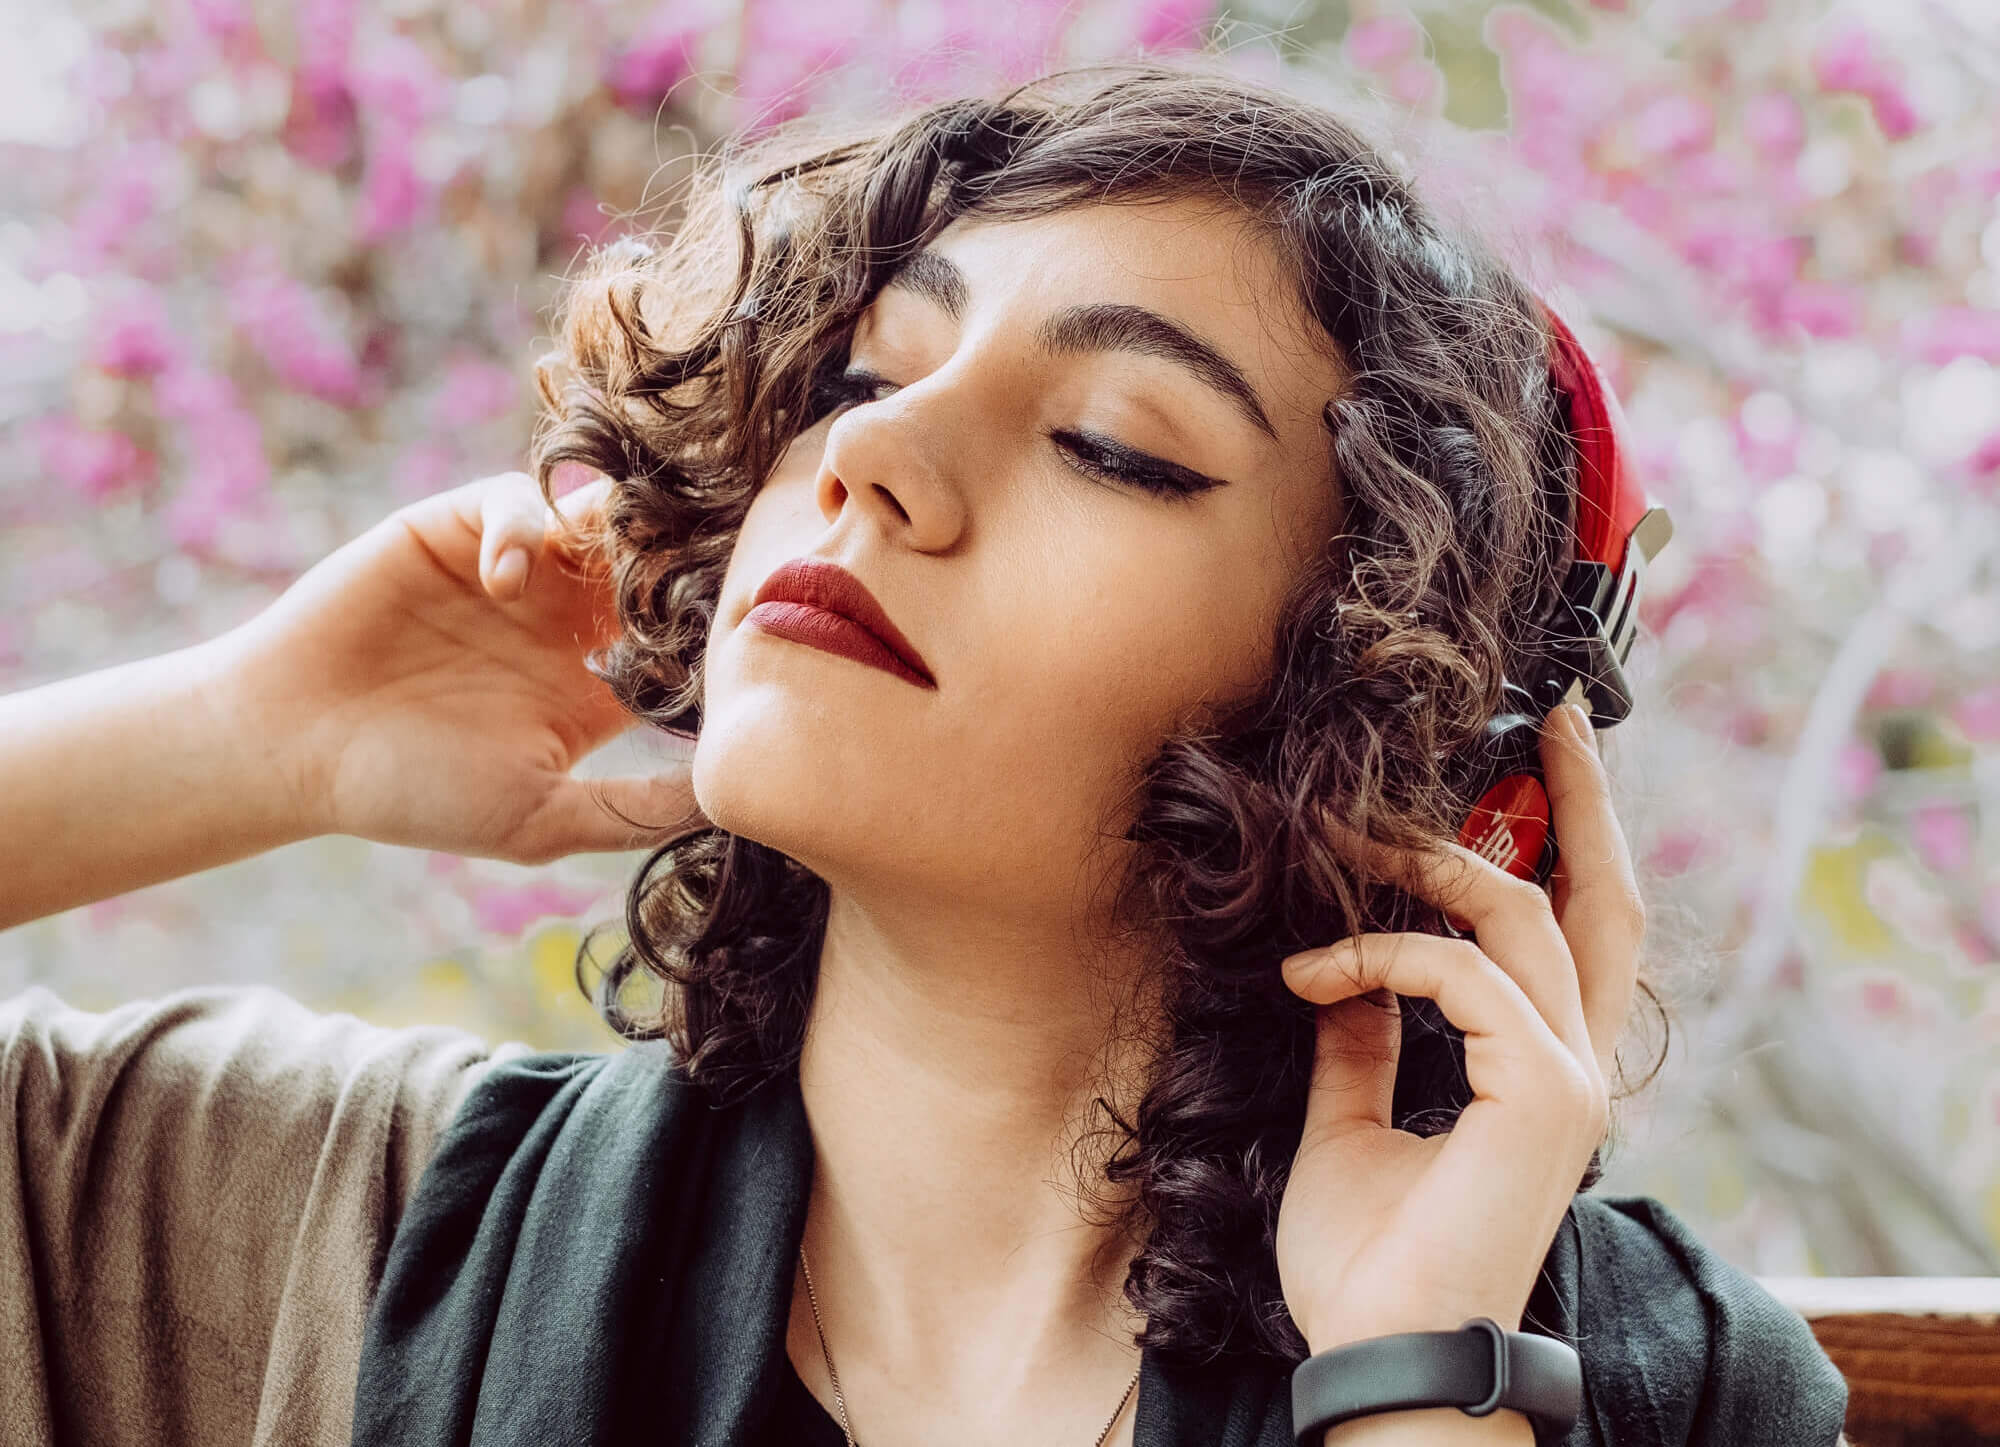 OligoFlora lança playlist sobre empoderamento feminino e amor próprio